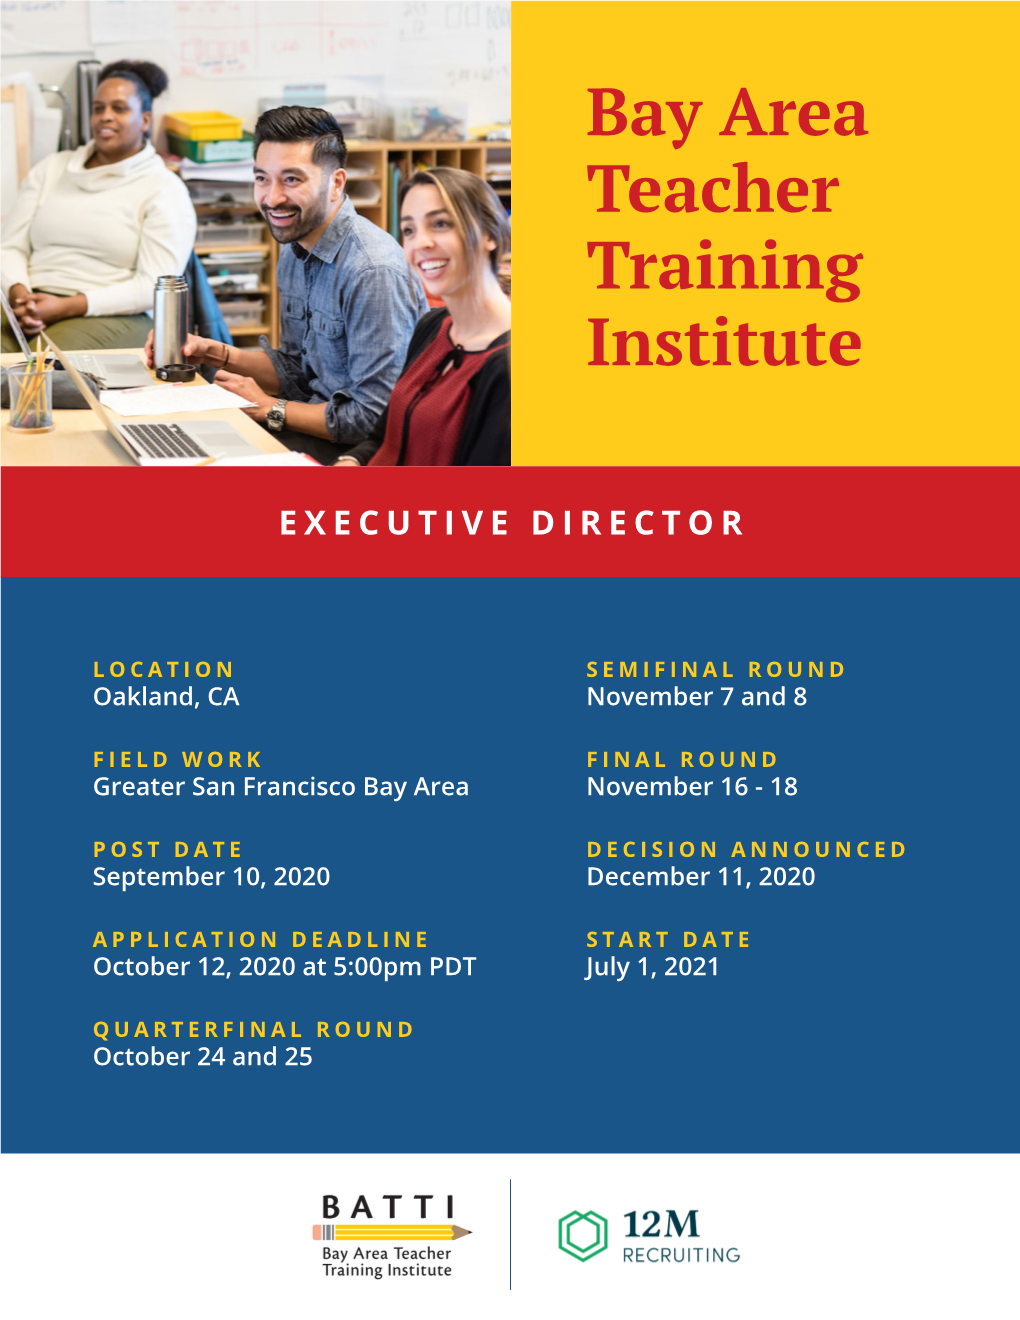 Bay Area Teacher Training Institute